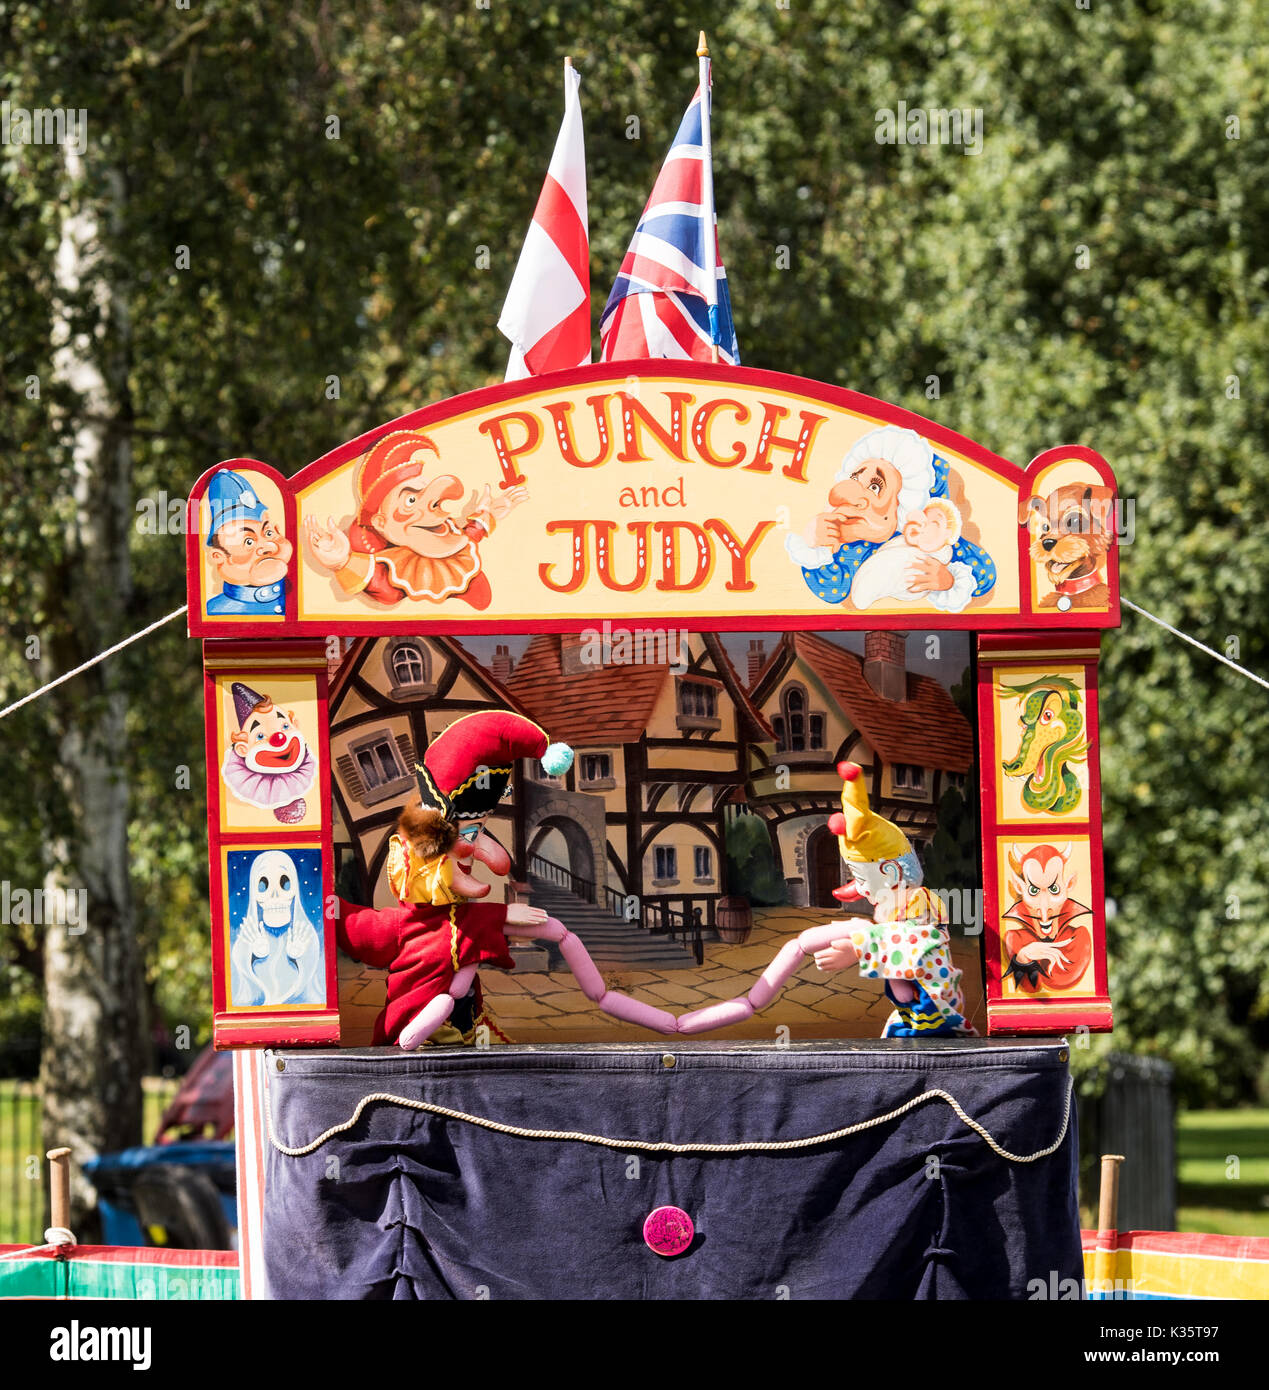 Un tradizionale Punch e Judy mostra di David Wilde in un parco all'inglese in estate a Brentwood, Essex con il signor punzone, clown e salsicce Foto Stock